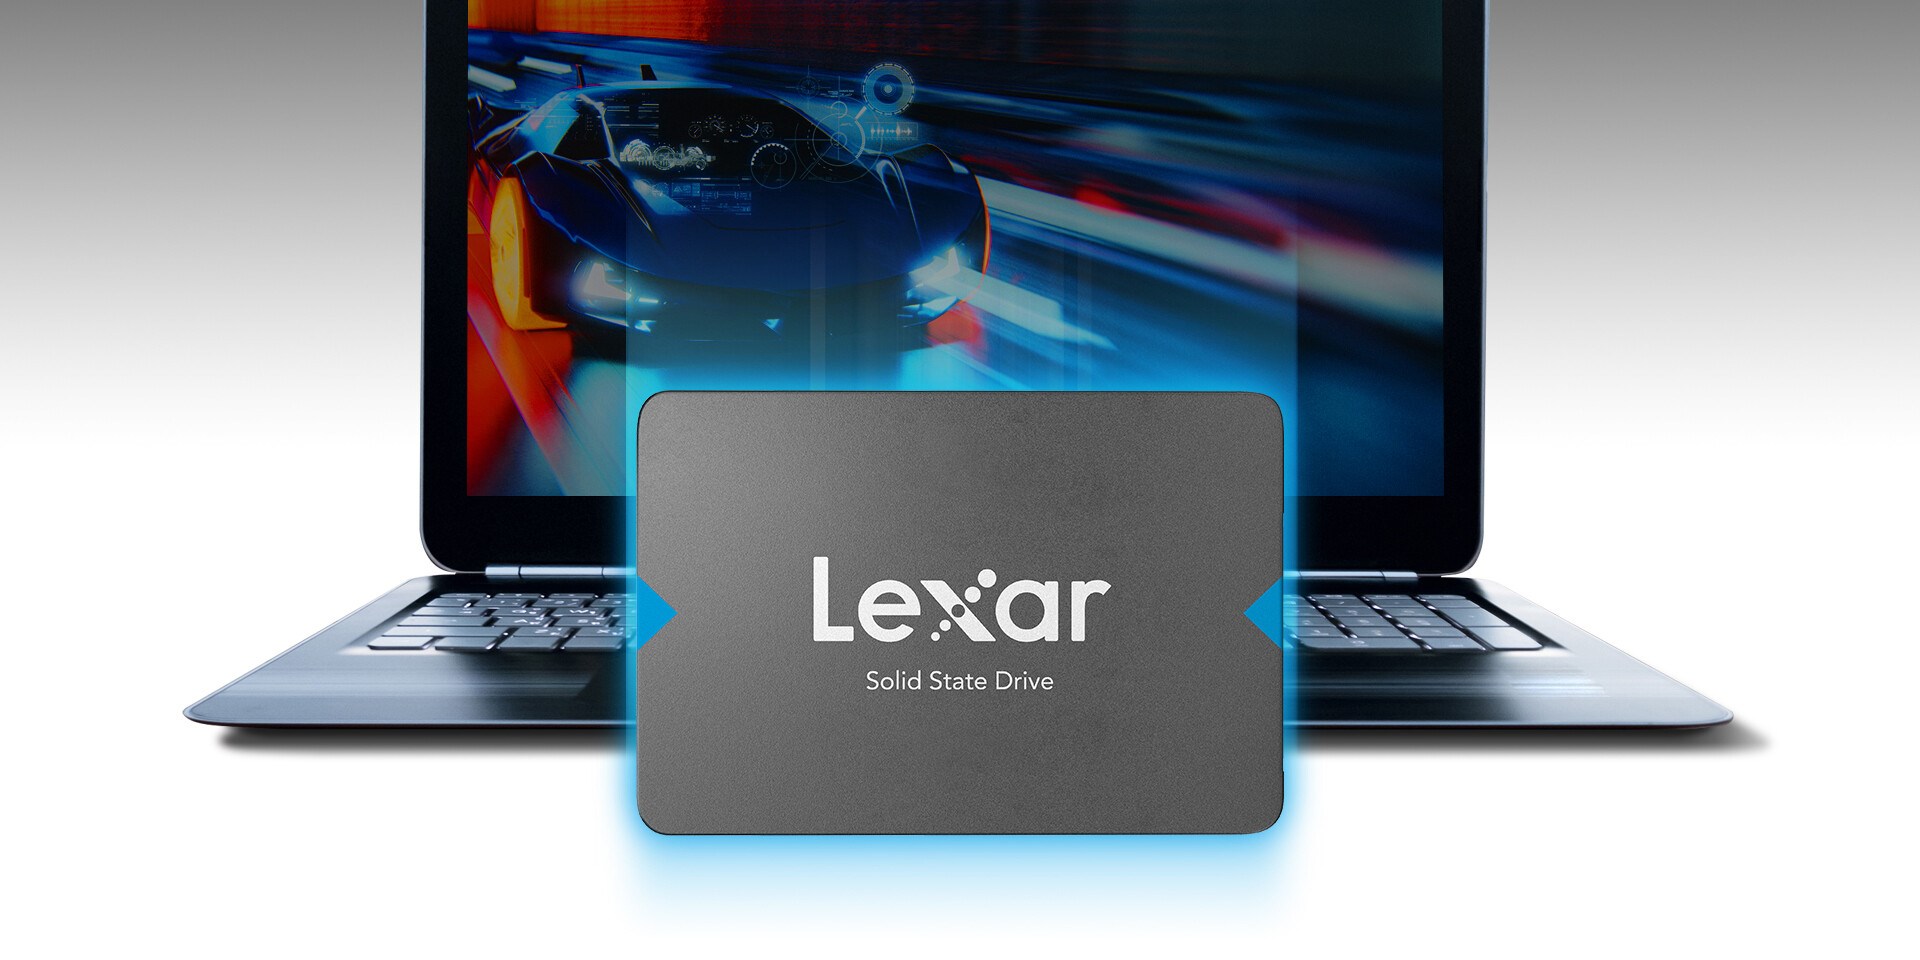 Kolay yükseltme için Lexar 2.5 inç SSD sürücüsü tanıtıldı